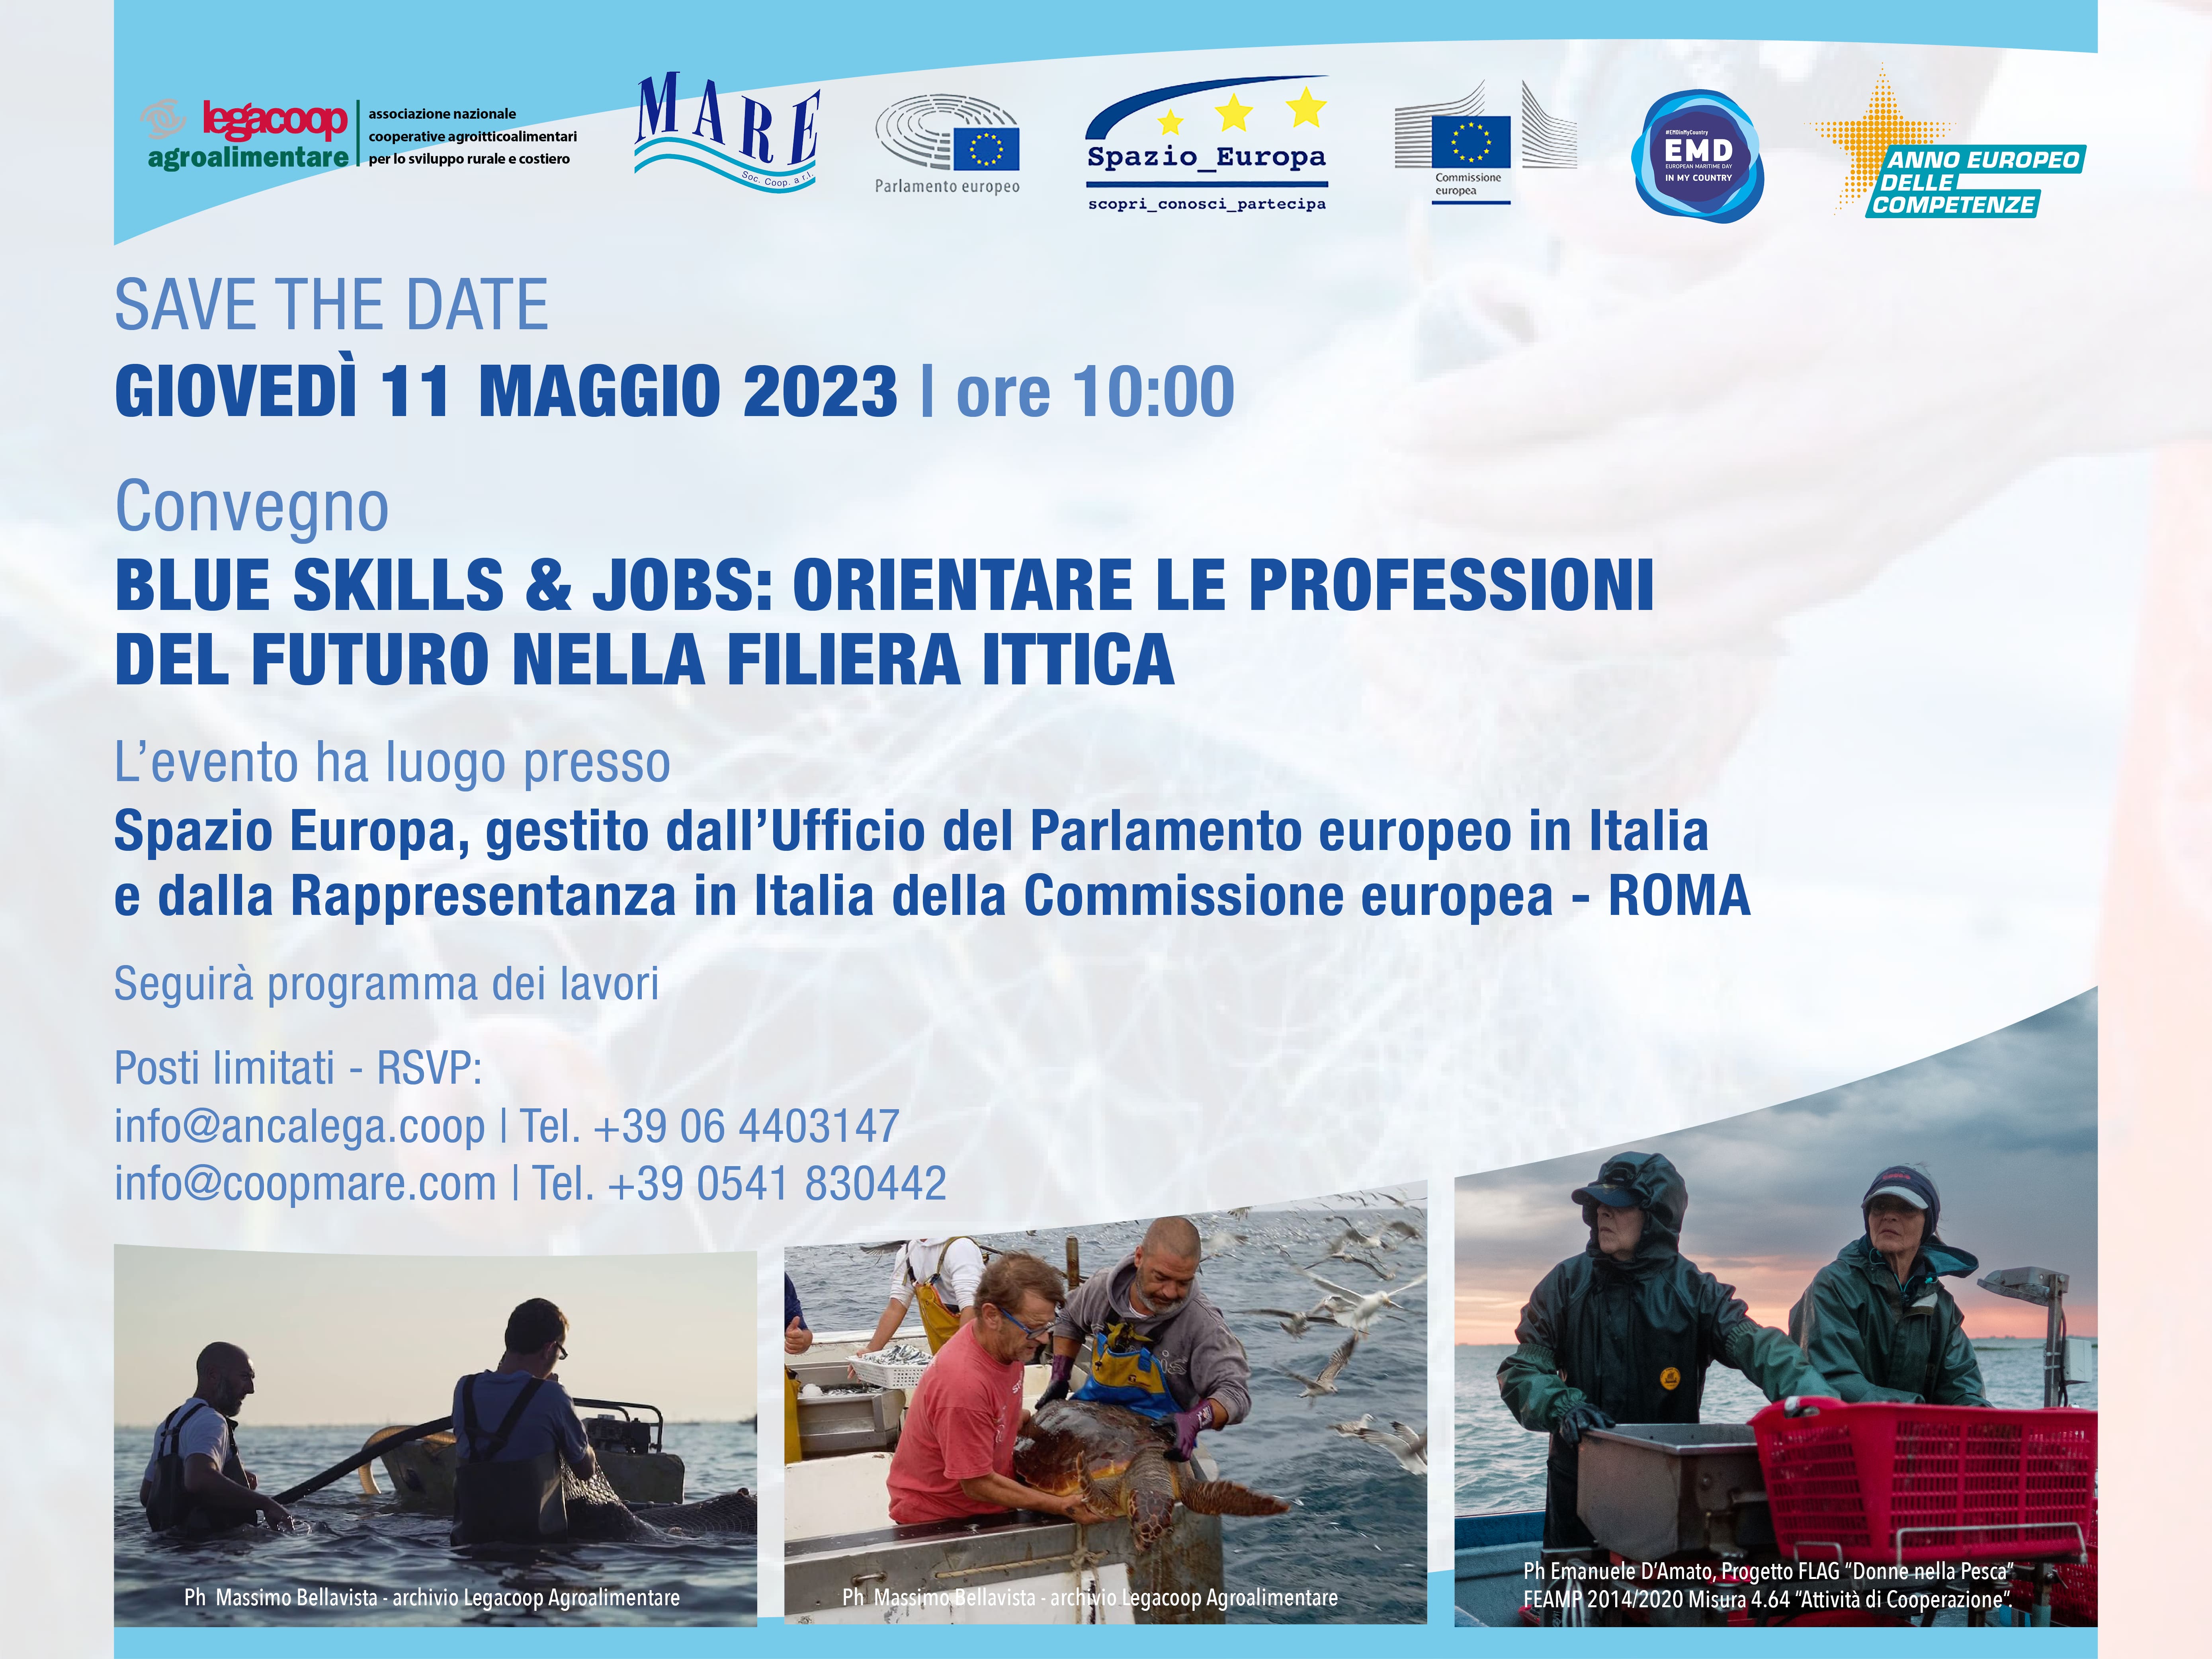 Pesca: Alleanza Cooperative, confermata fino al 2025 per Italia deroga taglia minima vongole